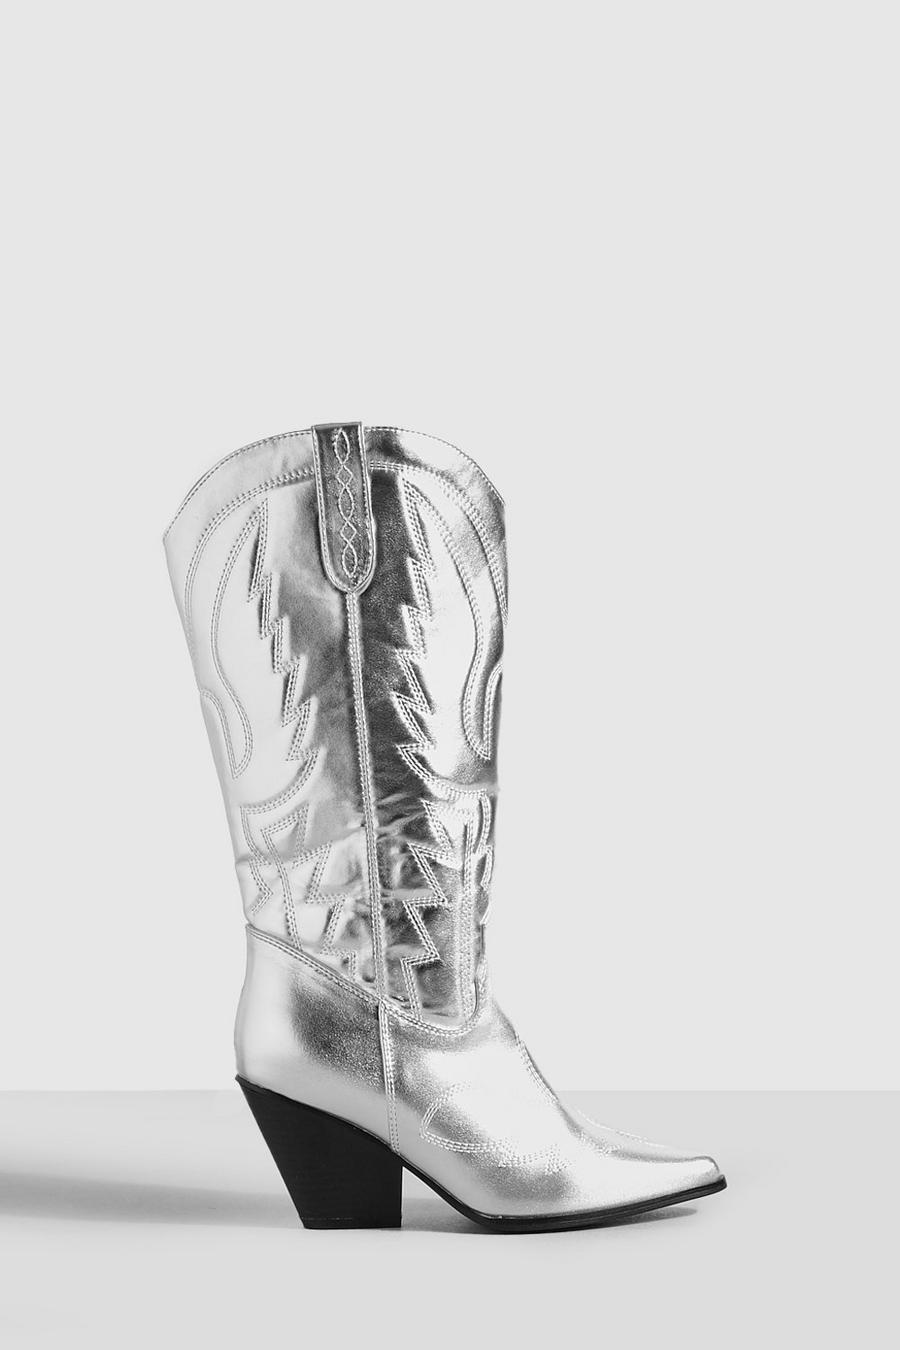 Stivali da cowboy Western a calzata ampia metallizzati al ginocchio, Silver